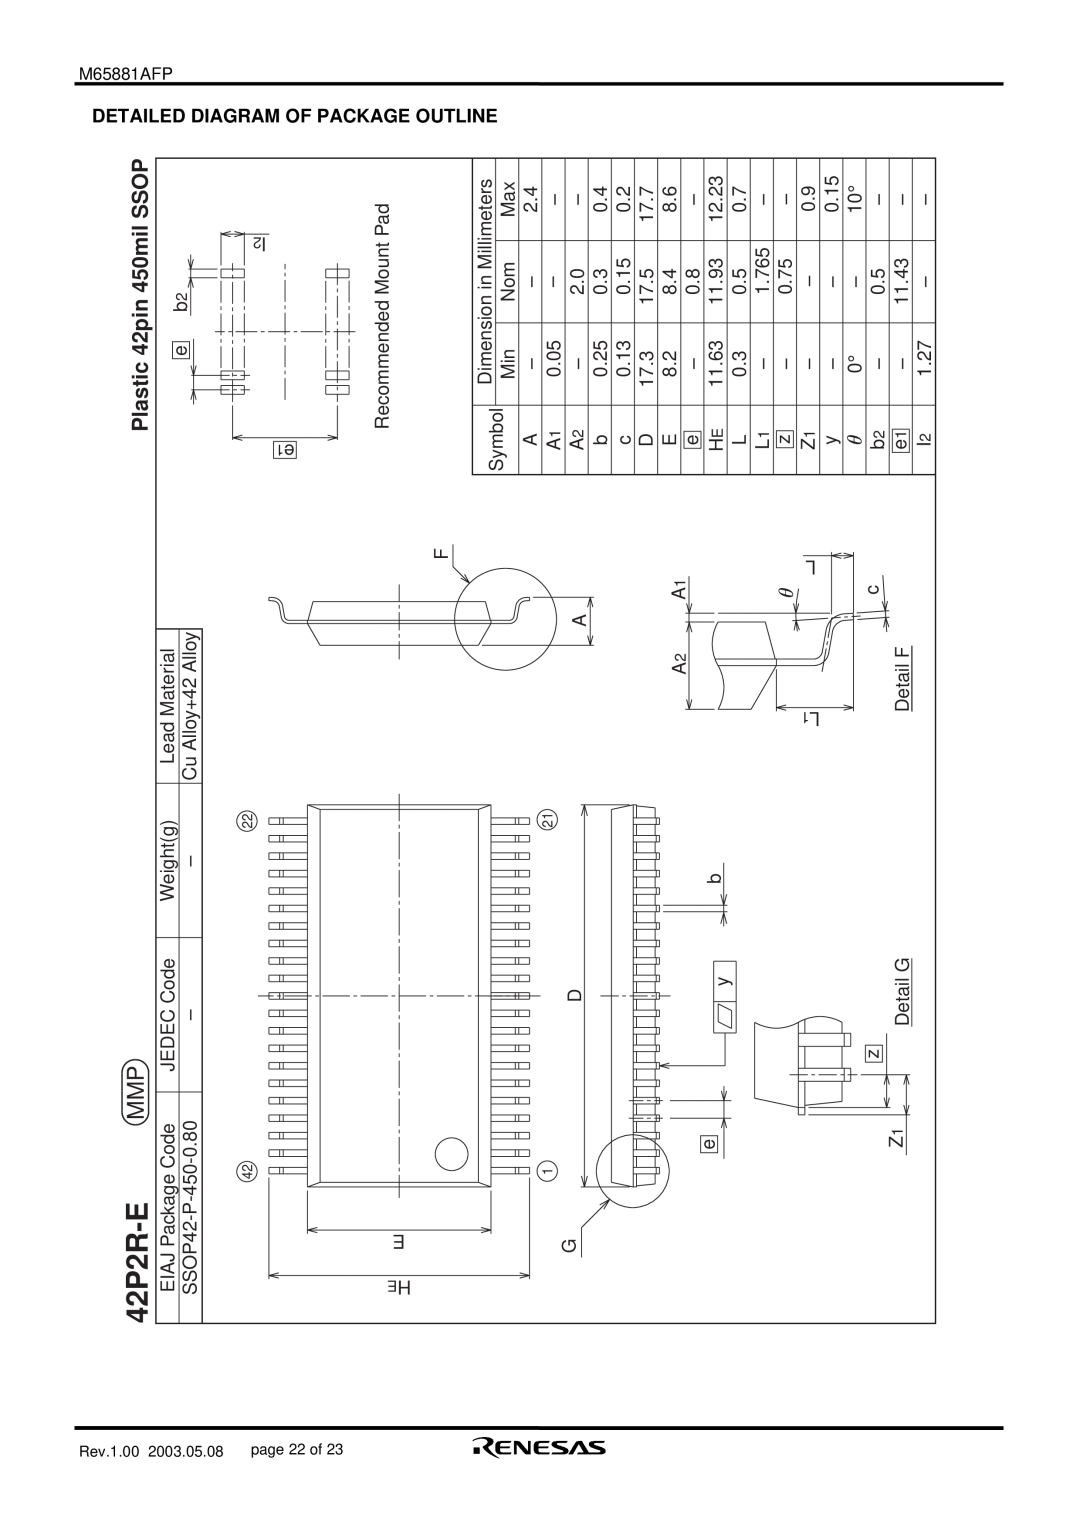 Renesas M65881AFP manual 42P2R-E, Plastic 42pin 450mil SSOP, Diagram, Package 